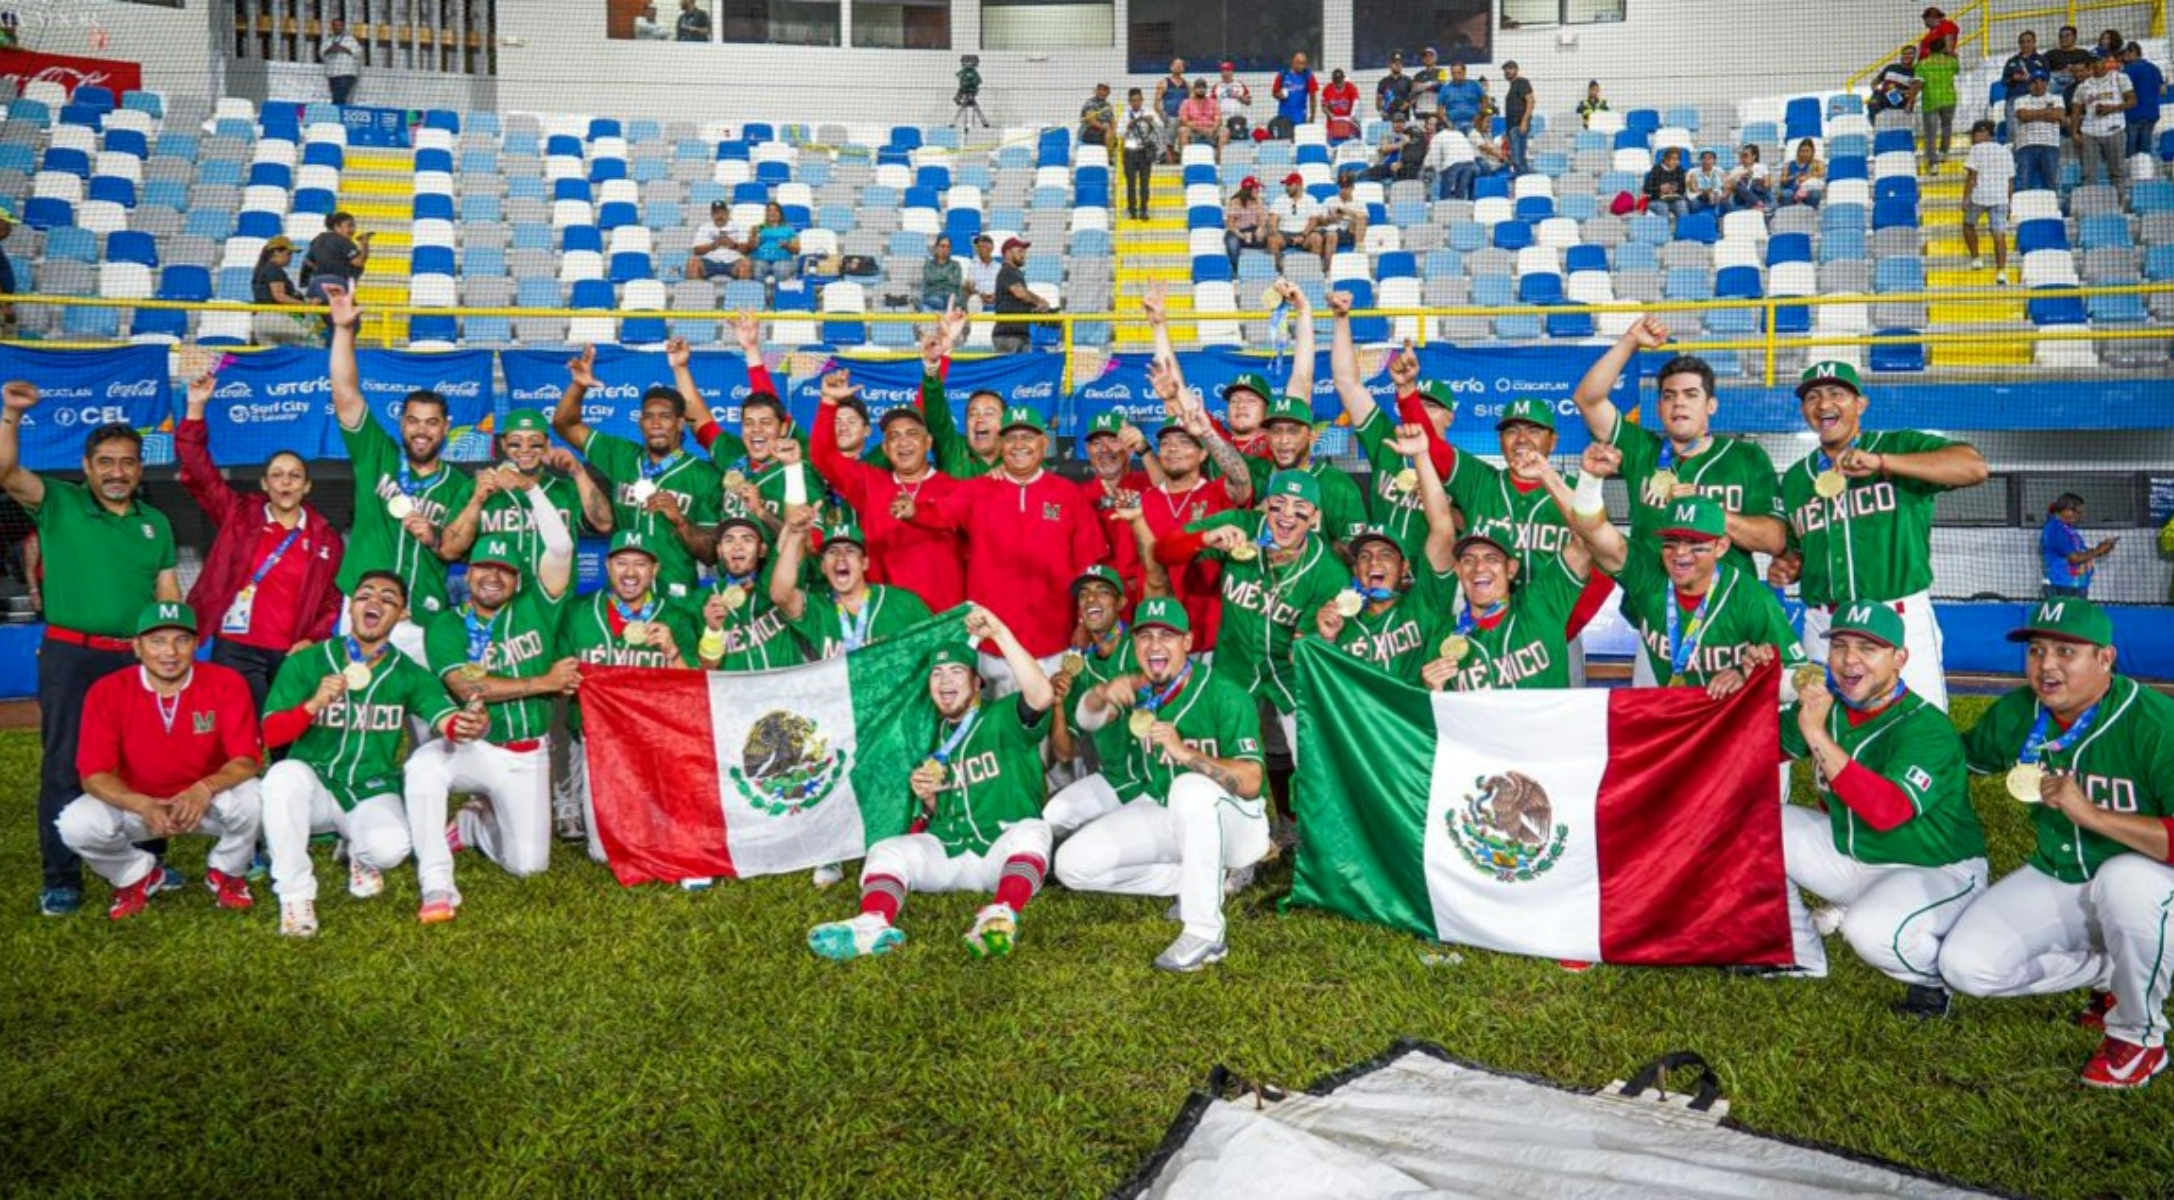 Festejo de la selección mexicana de beisbol, tras ganar medalla de oro en San Salvador 2023.
